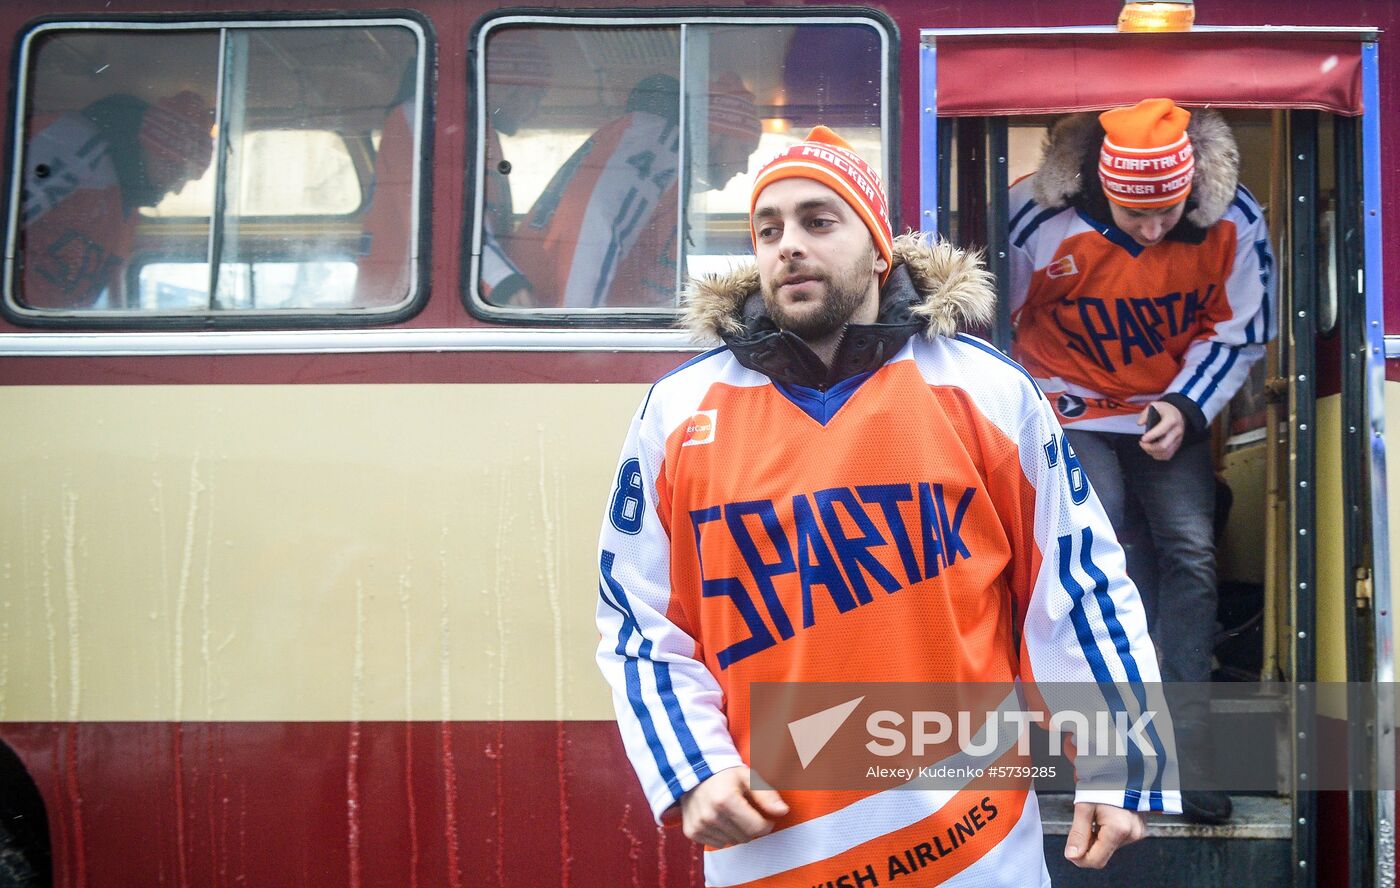 Russia Ice Hockey Spartak - Sochi